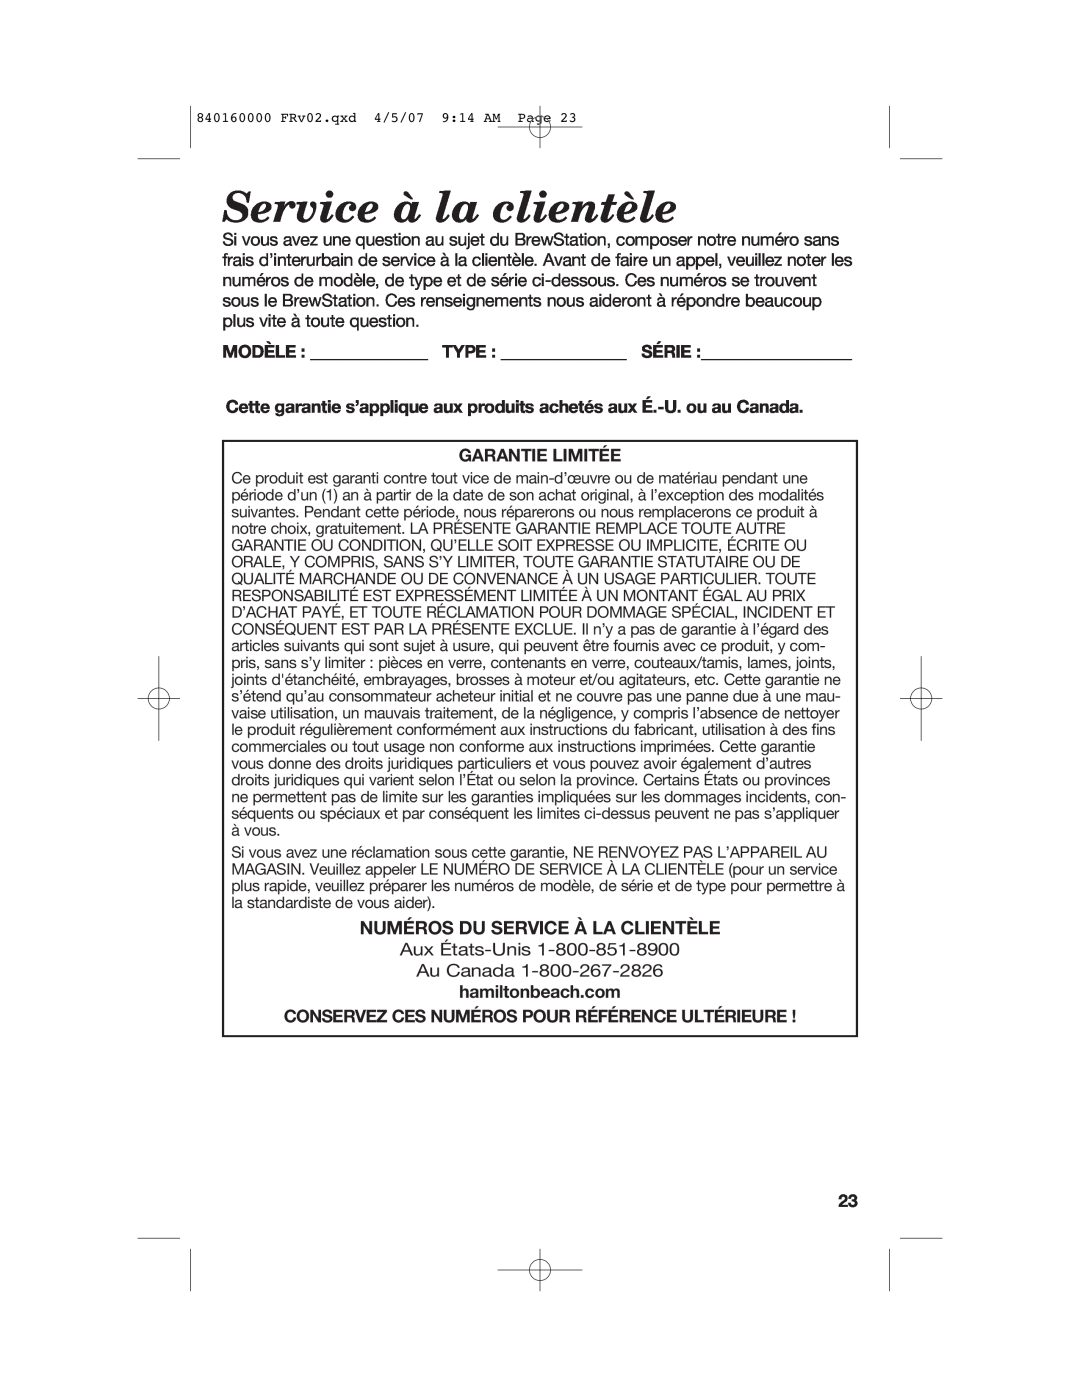 Hamilton Beach D43012B Service à la clientèle, Numéros Du Service À La Clientèle, Modèle Type Série, Garantie Limitée 